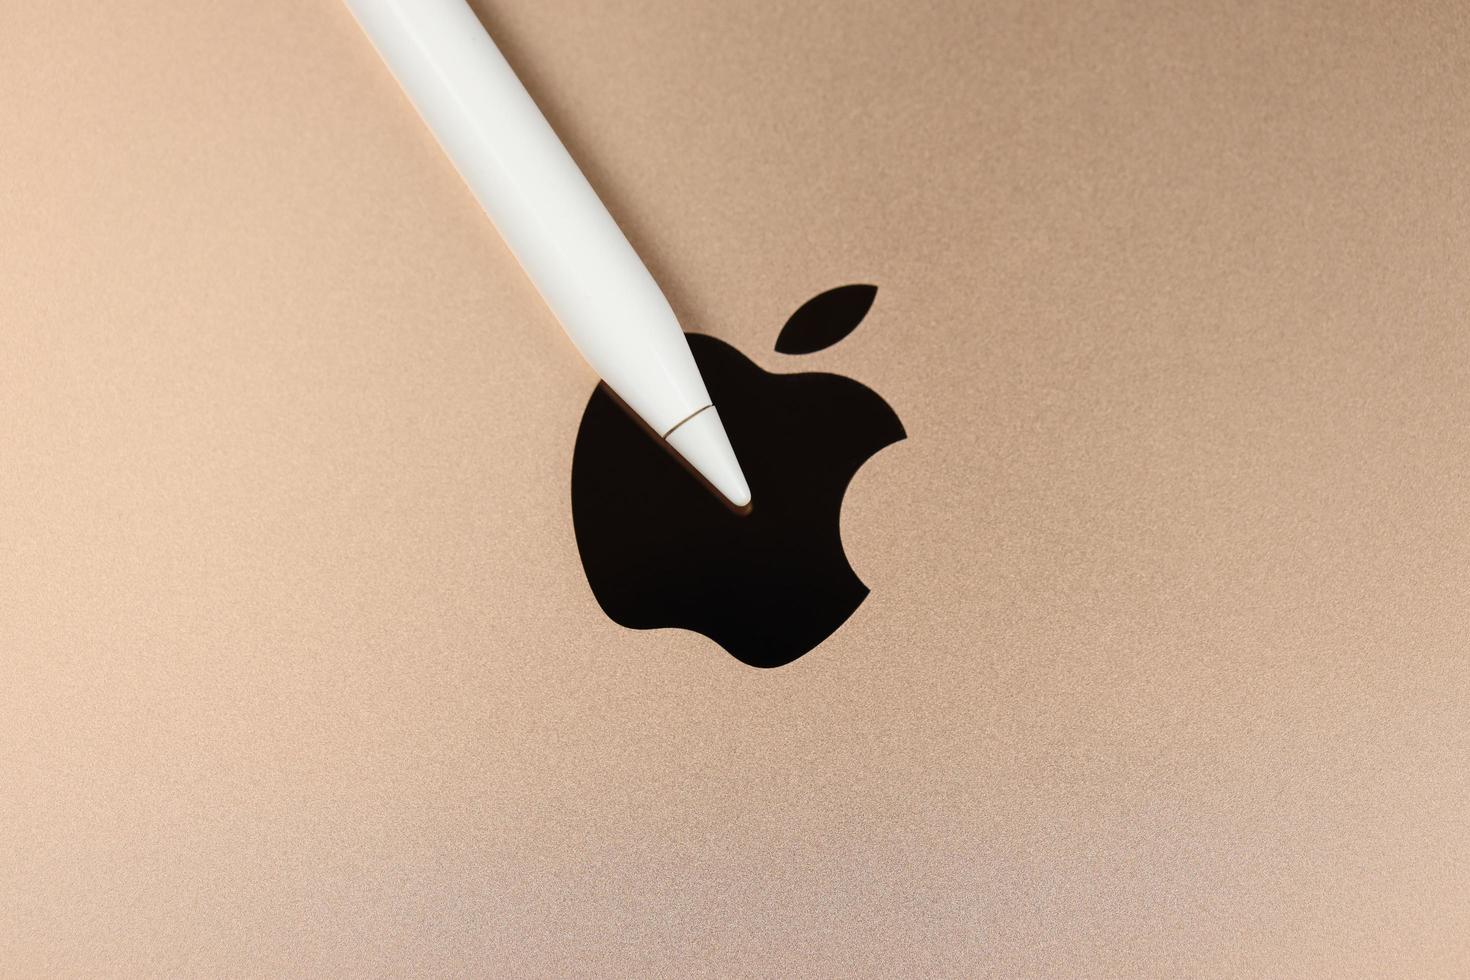 kharkiv, ucrania - 27 de enero de 2022 lápiz de manzana en la nueva superficie de cuerpo dorado de apple ipad con el logotipo de la empresa. Apple Inc. es una empresa de tecnología estadounidense con sede en california foto